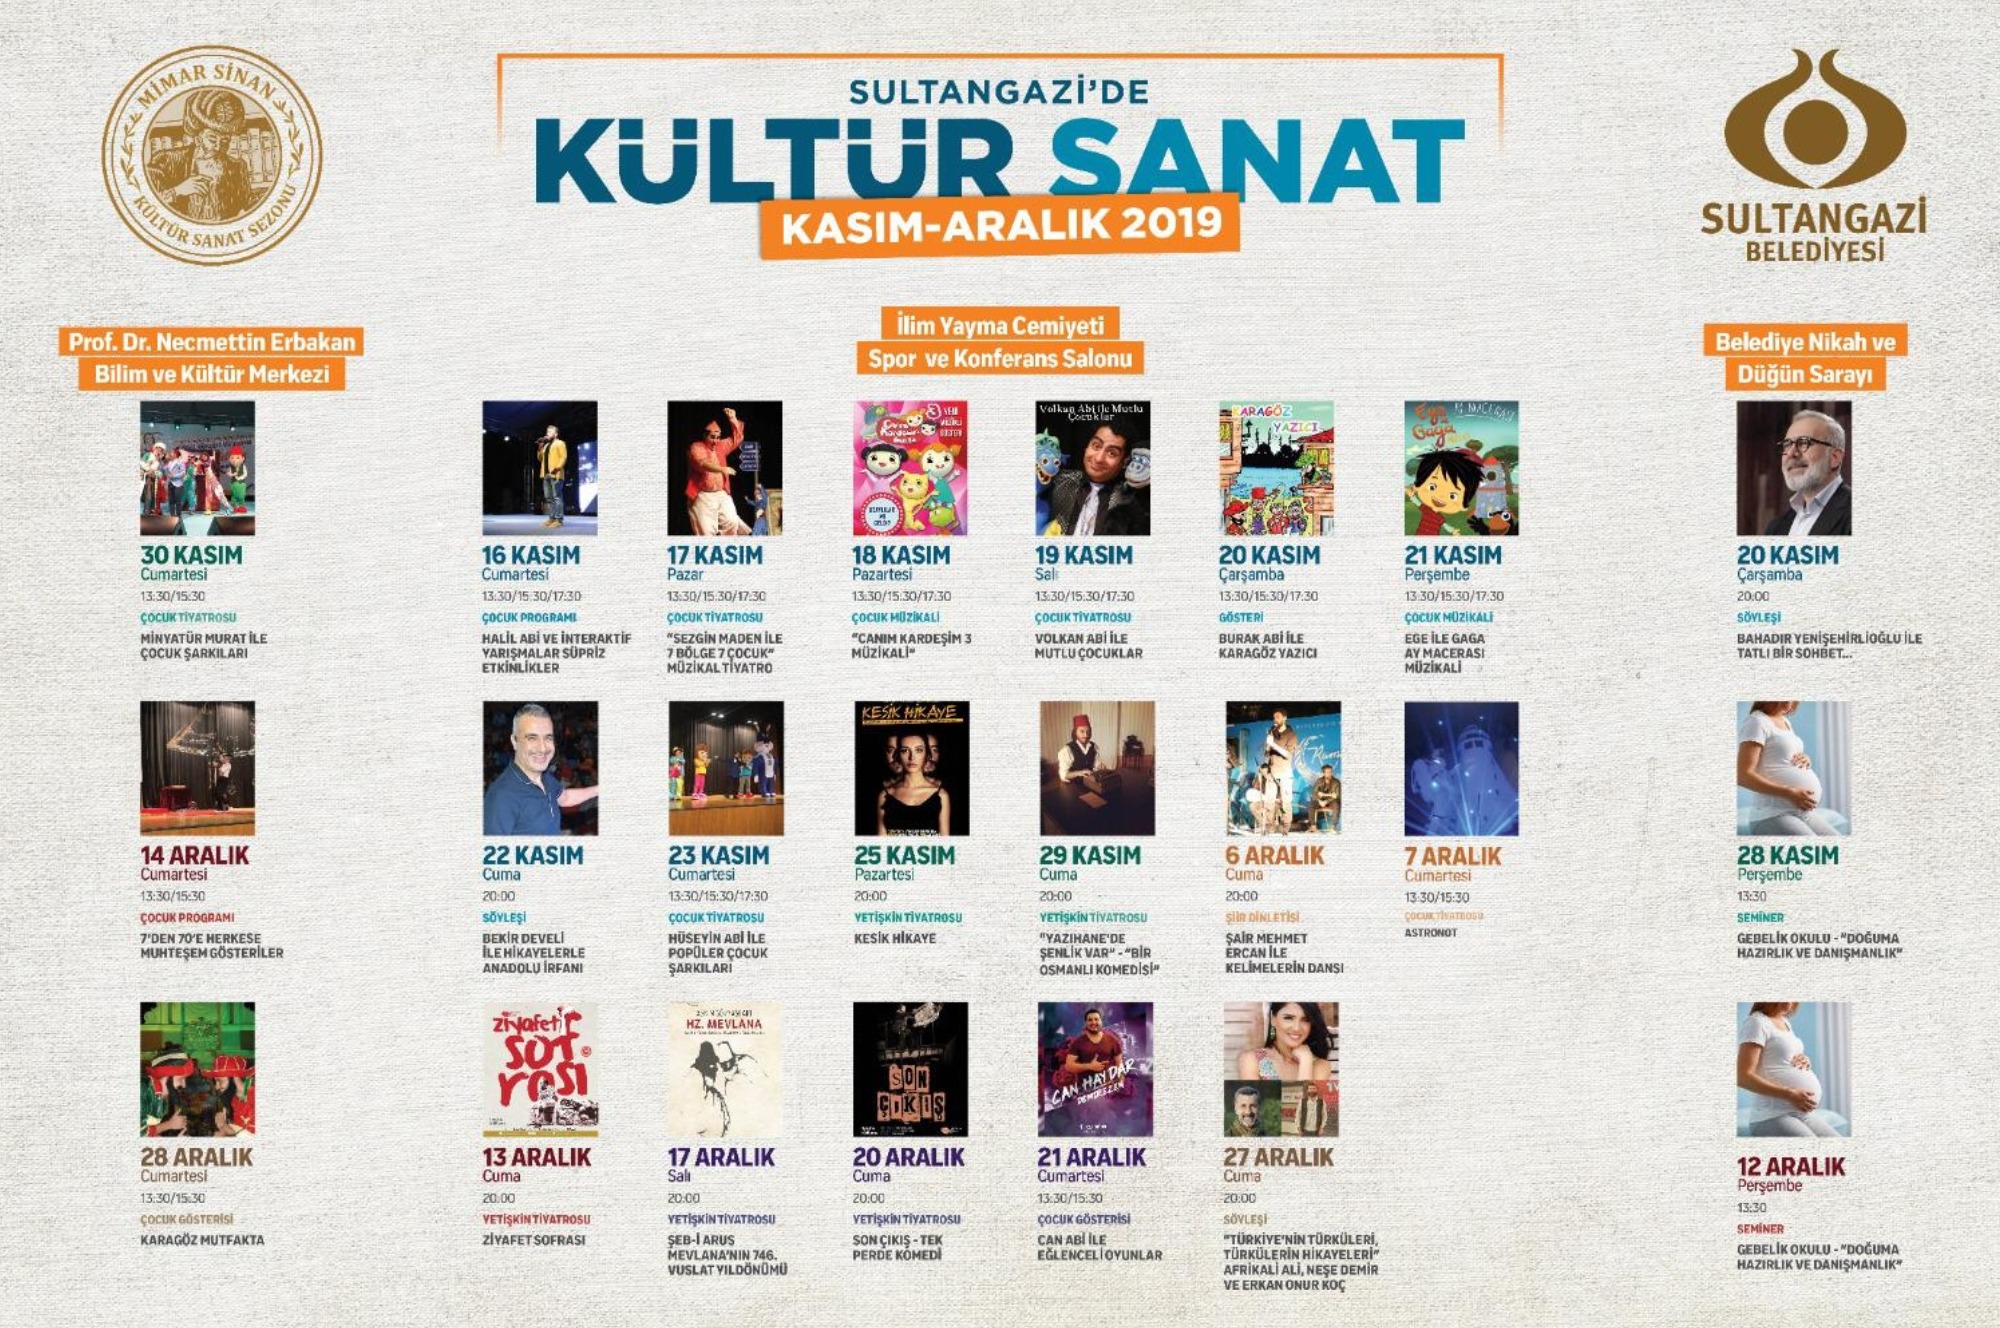 Sultangazi'de Kültür-Sanat Sezonu Başlıyor!